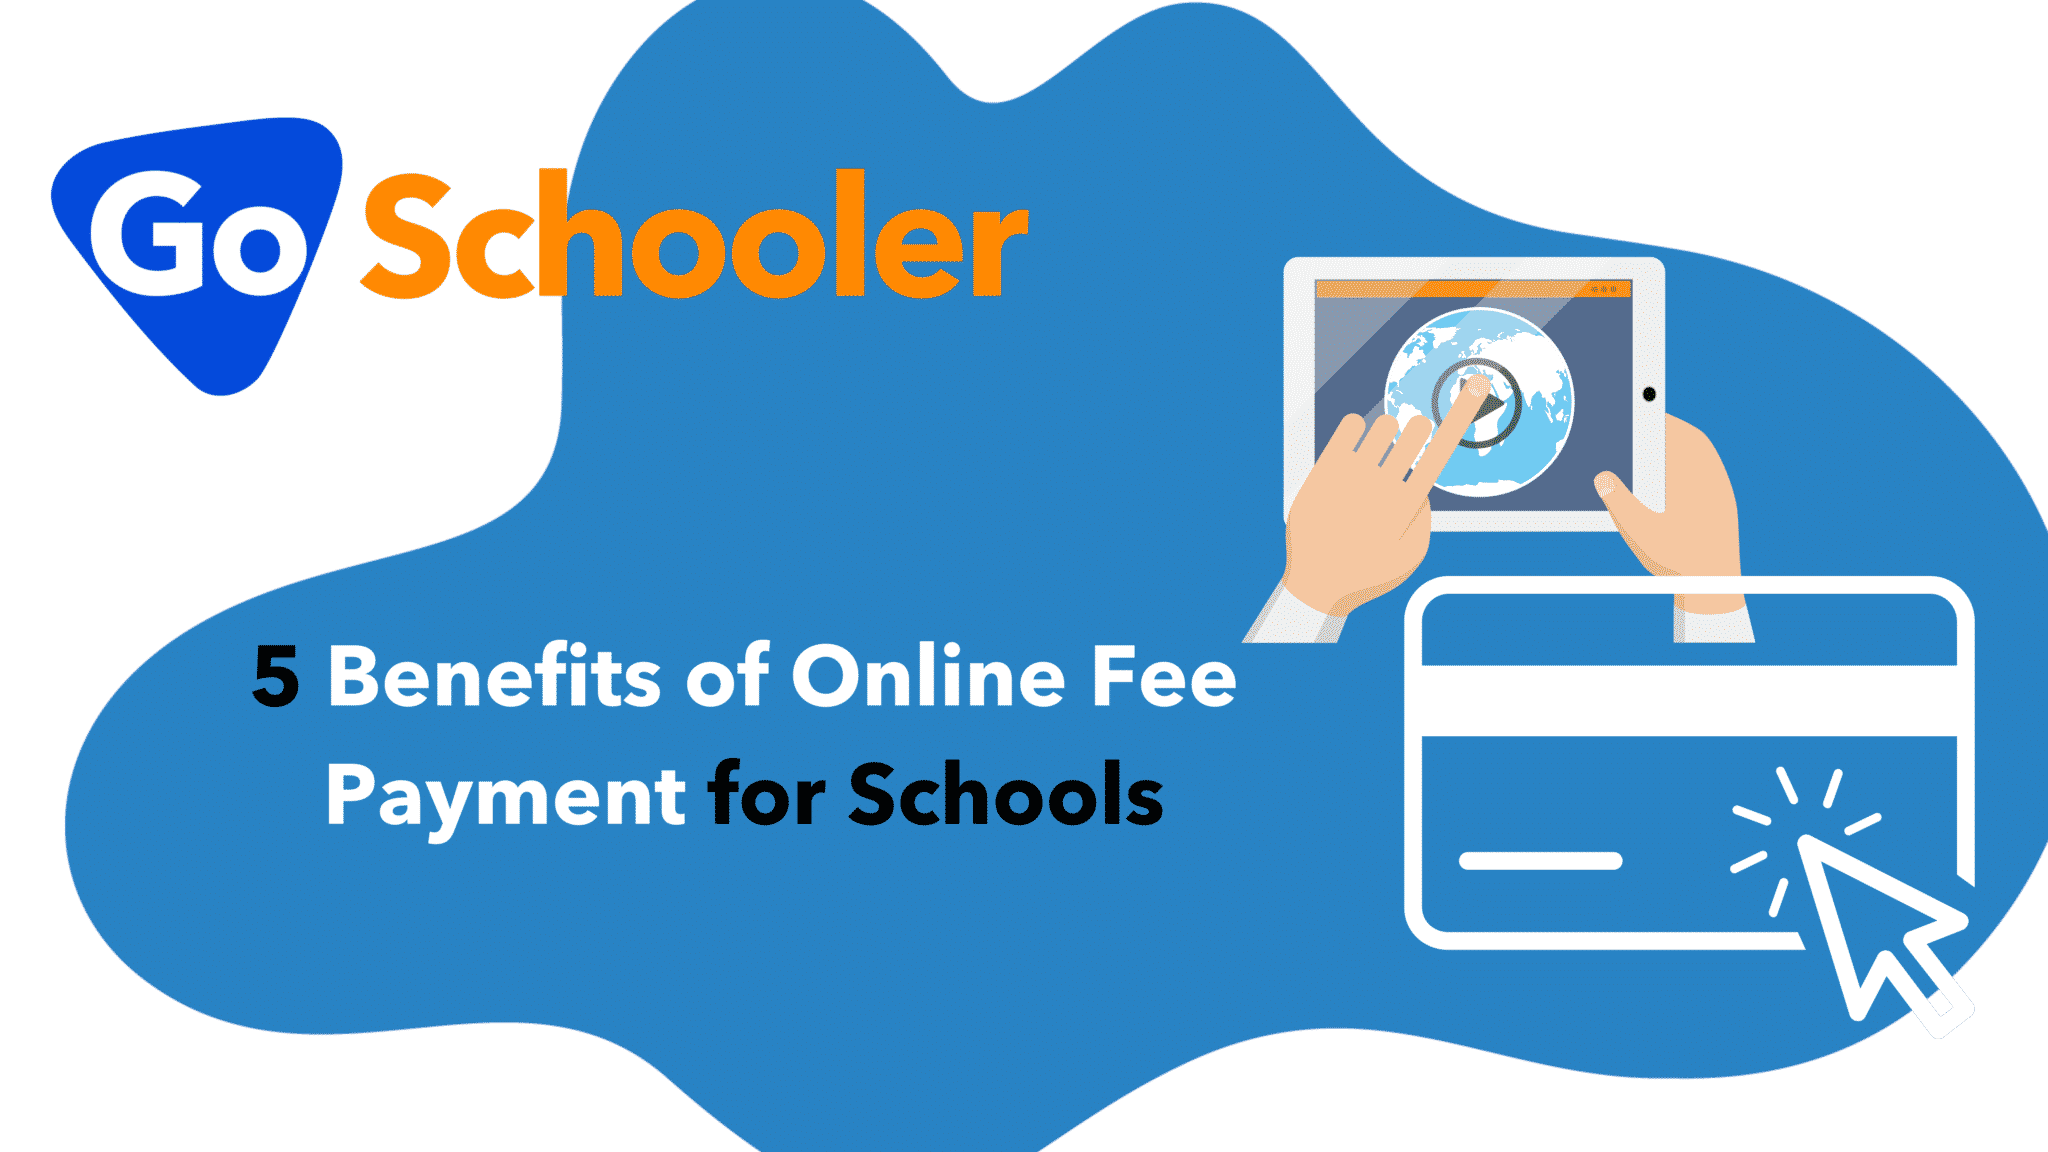 5-benefits-of-online-fee-payment-for-schools-goschooler